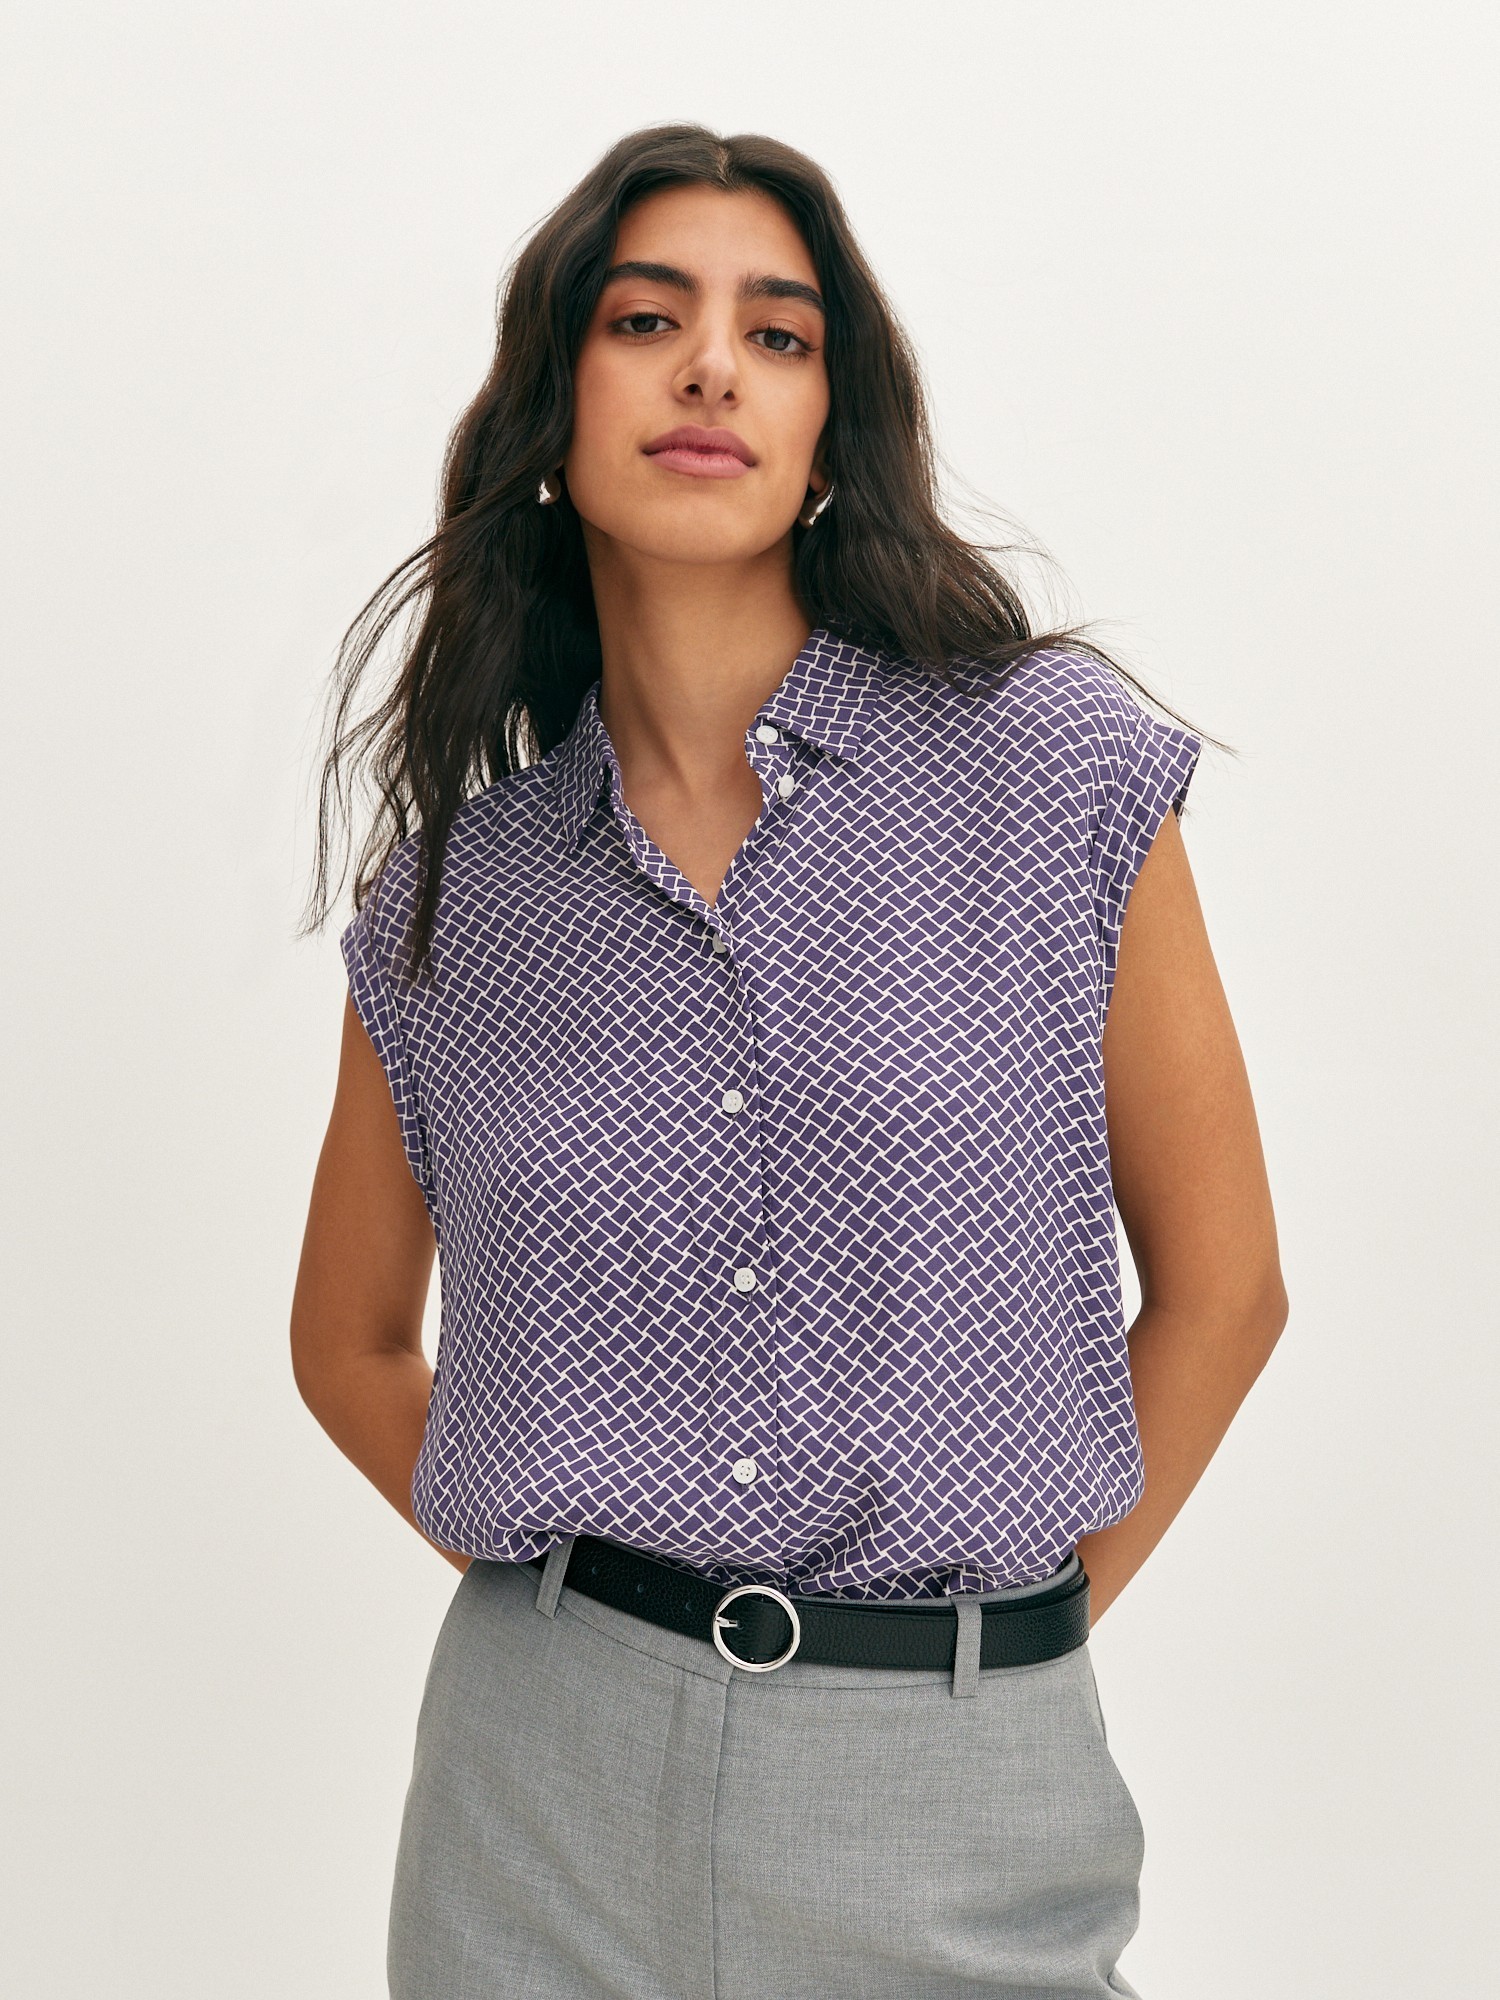 Модные блузки - трендовые модели и красивые образы с блузками